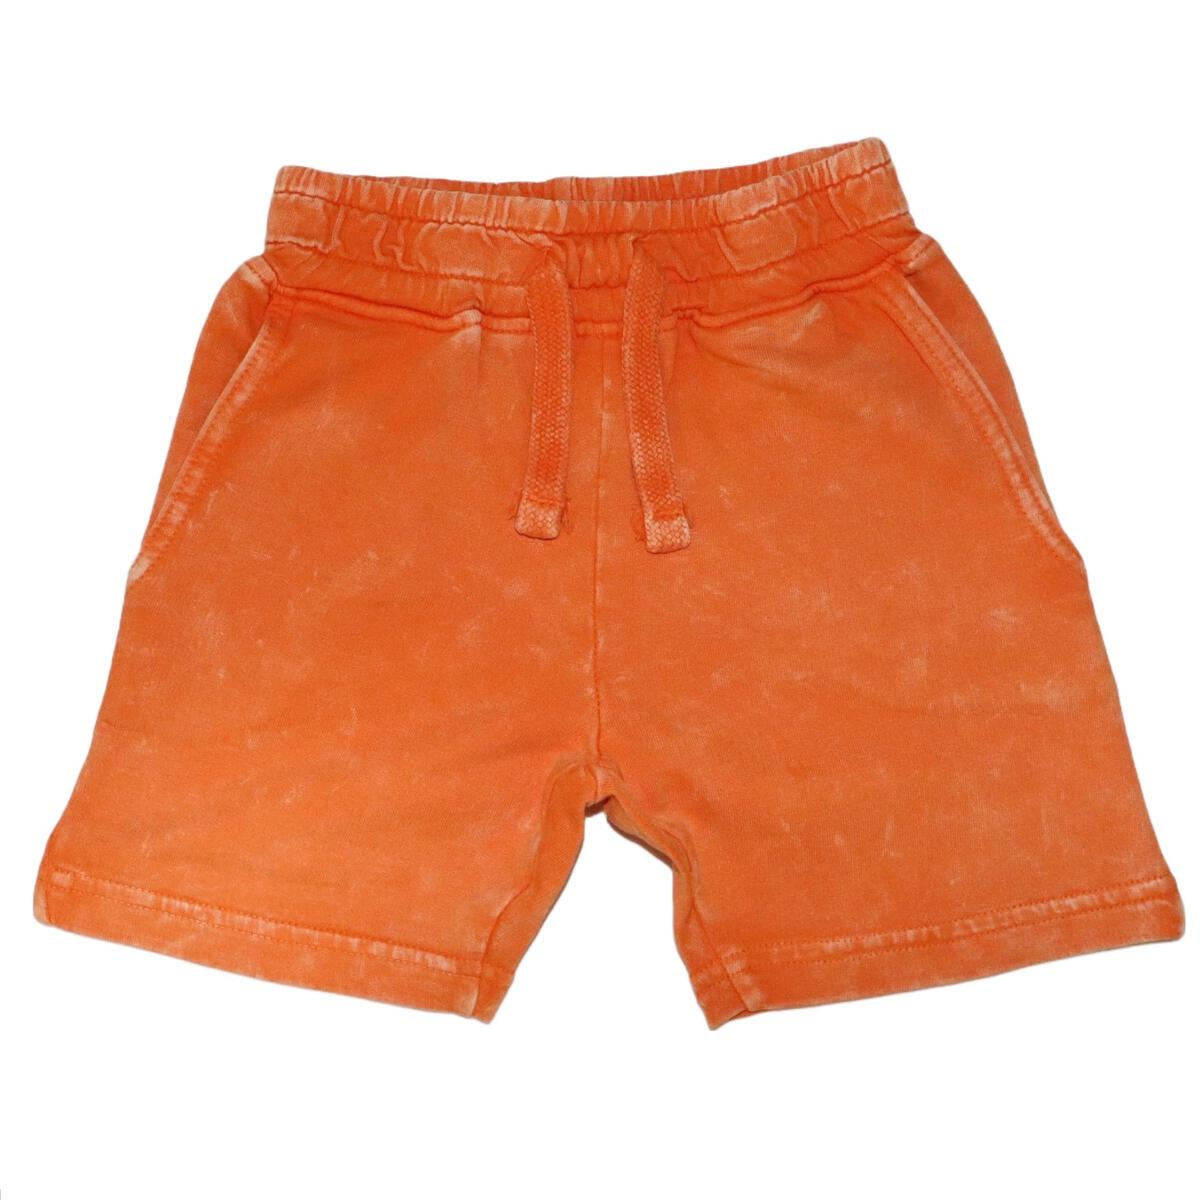 Orange Enzyme Shorts - Twinkle Twinkle Little One